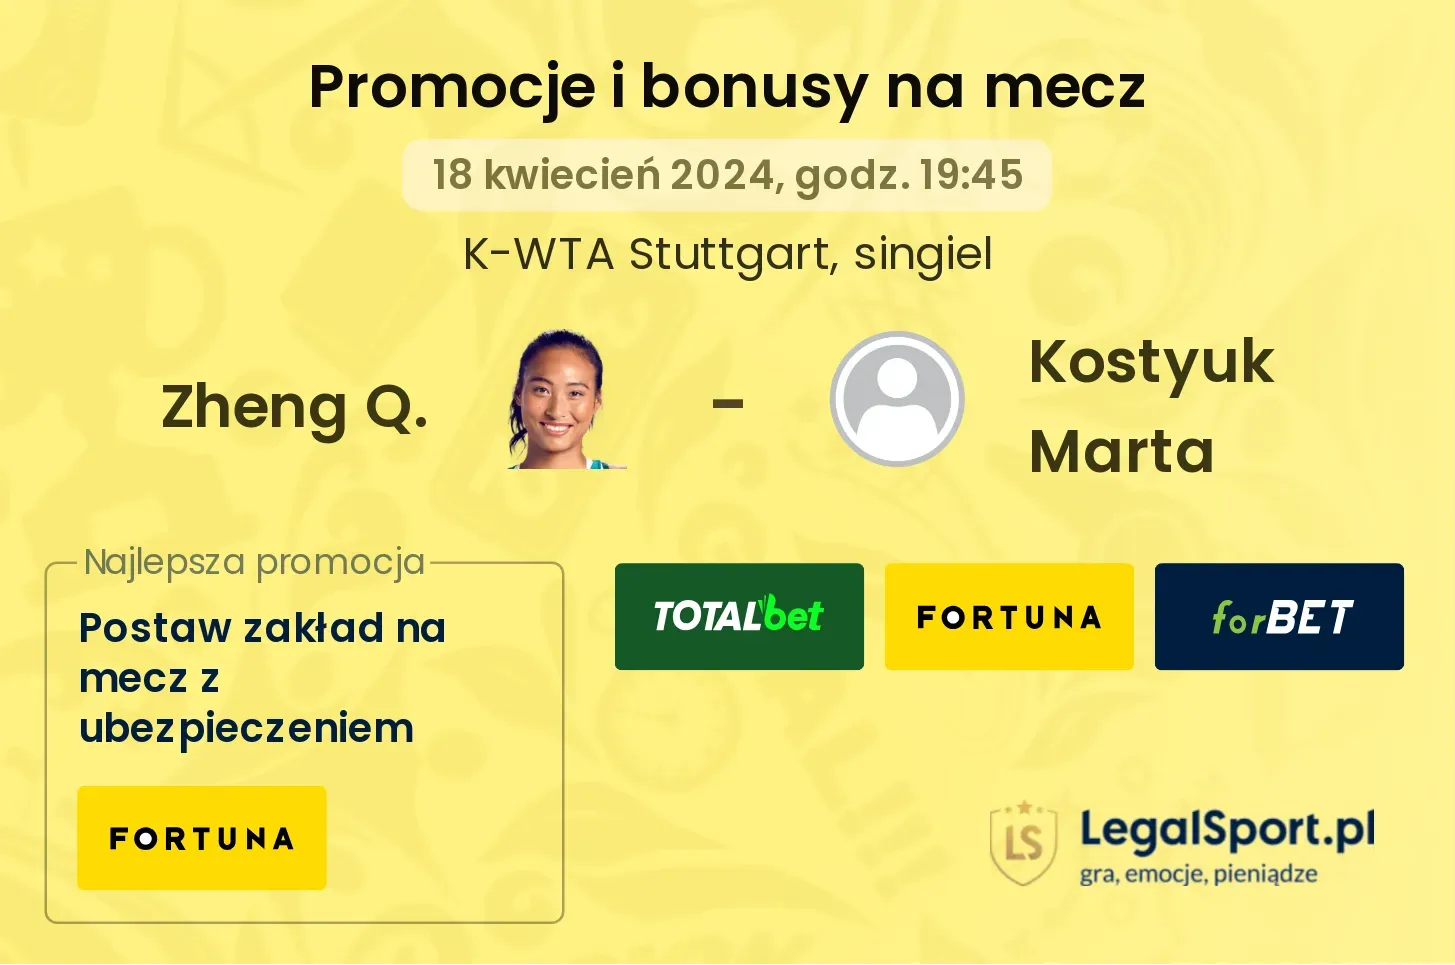 Zheng Q. - Kostyuk Marta promocje bonusy na mecz